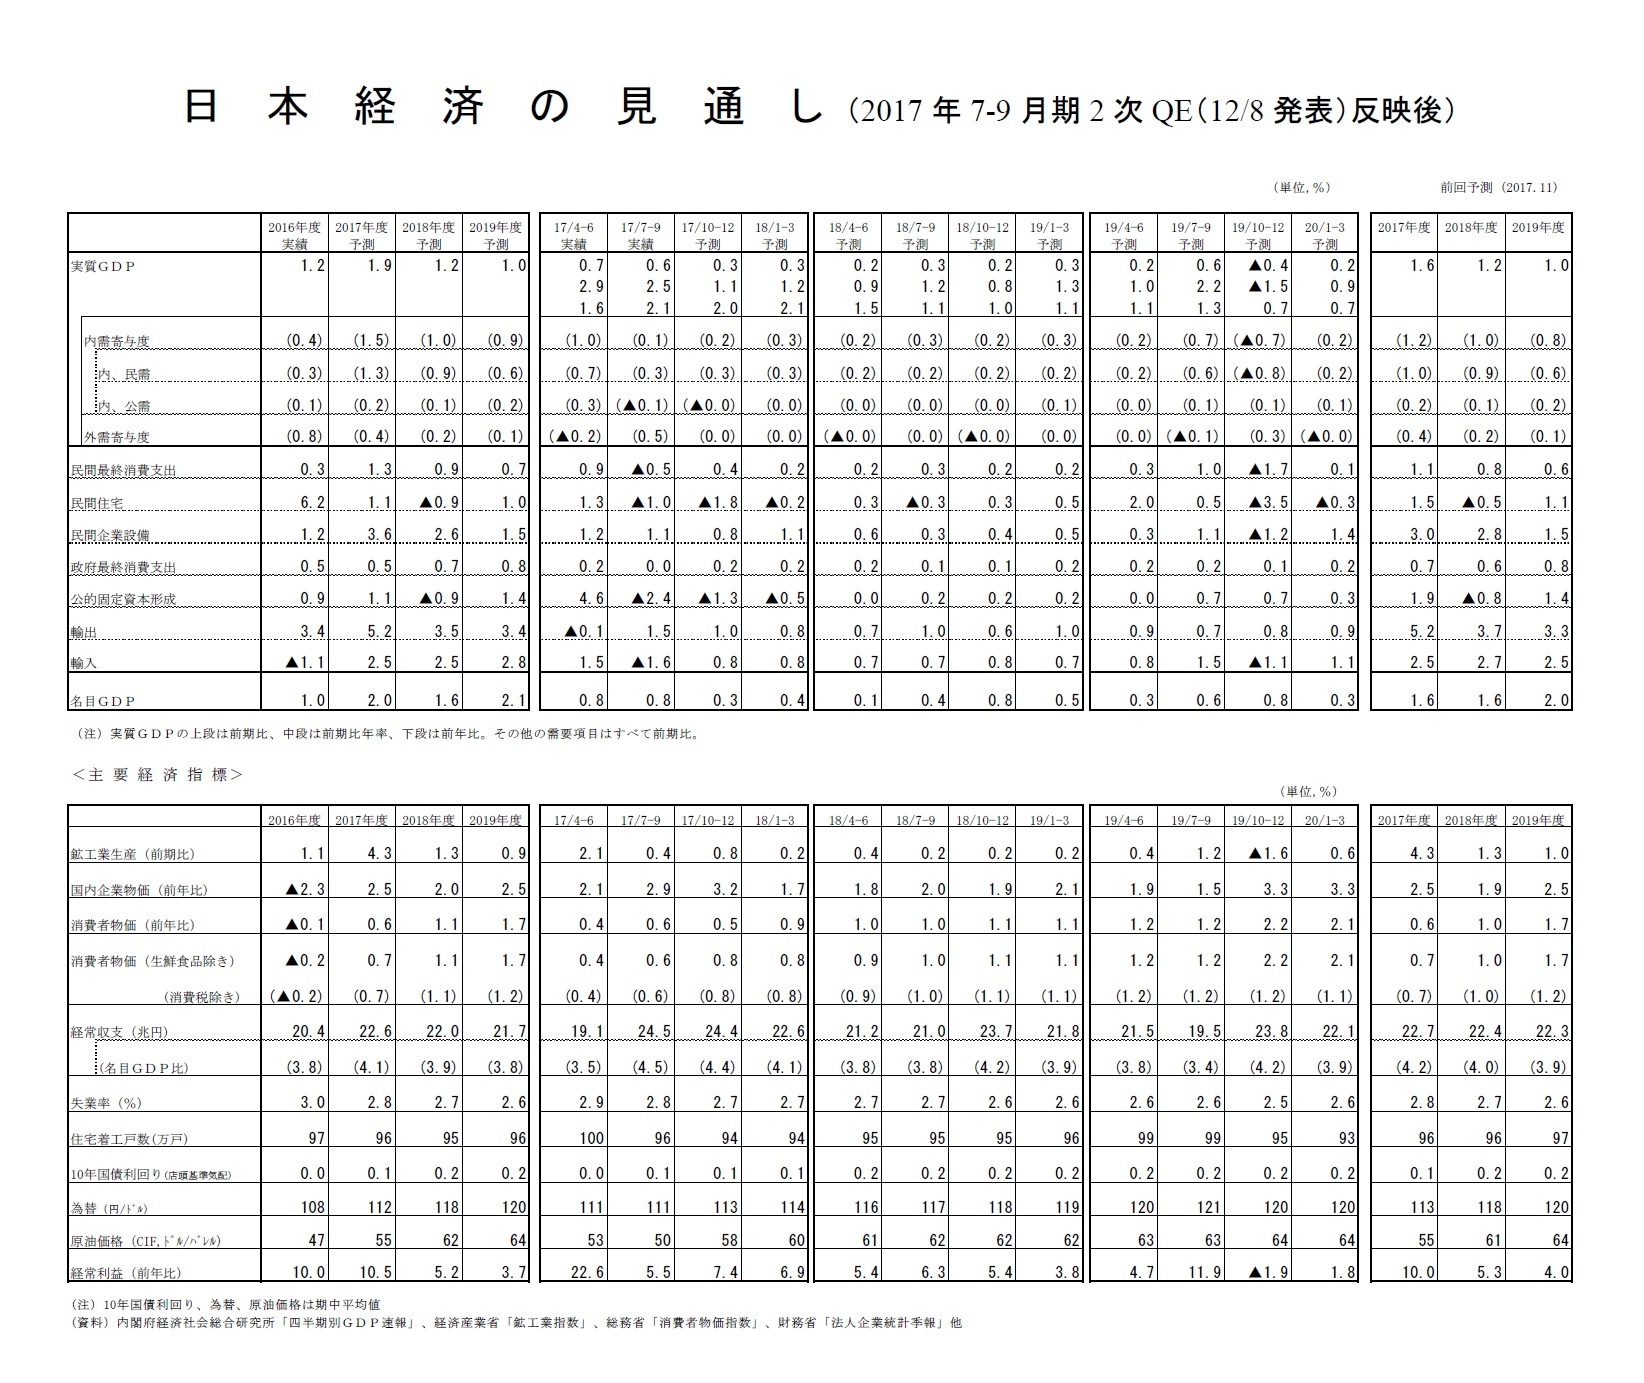 日本経済の見通し（2017年7-9月期2次QE（12/8発表）反映後）